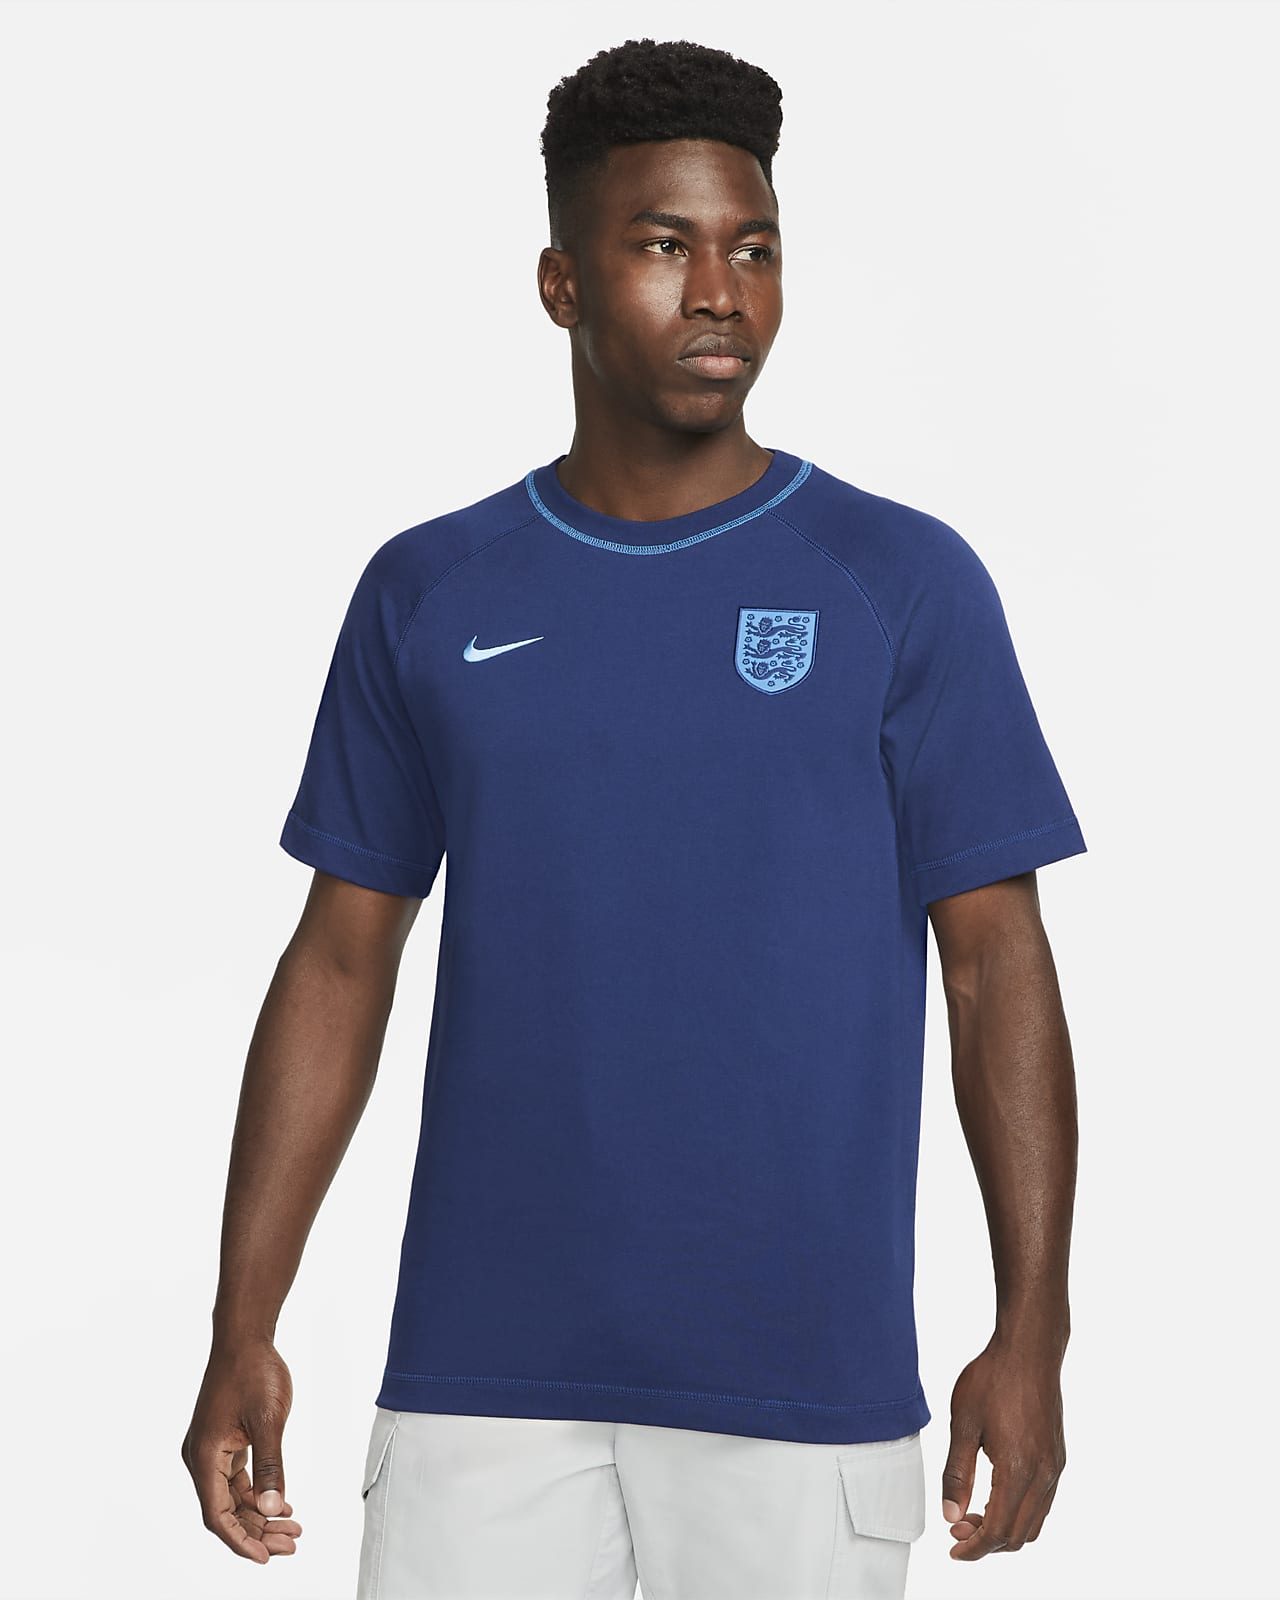 Delgado a menudo cápsula England Men's Nike Football Top. Nike GB